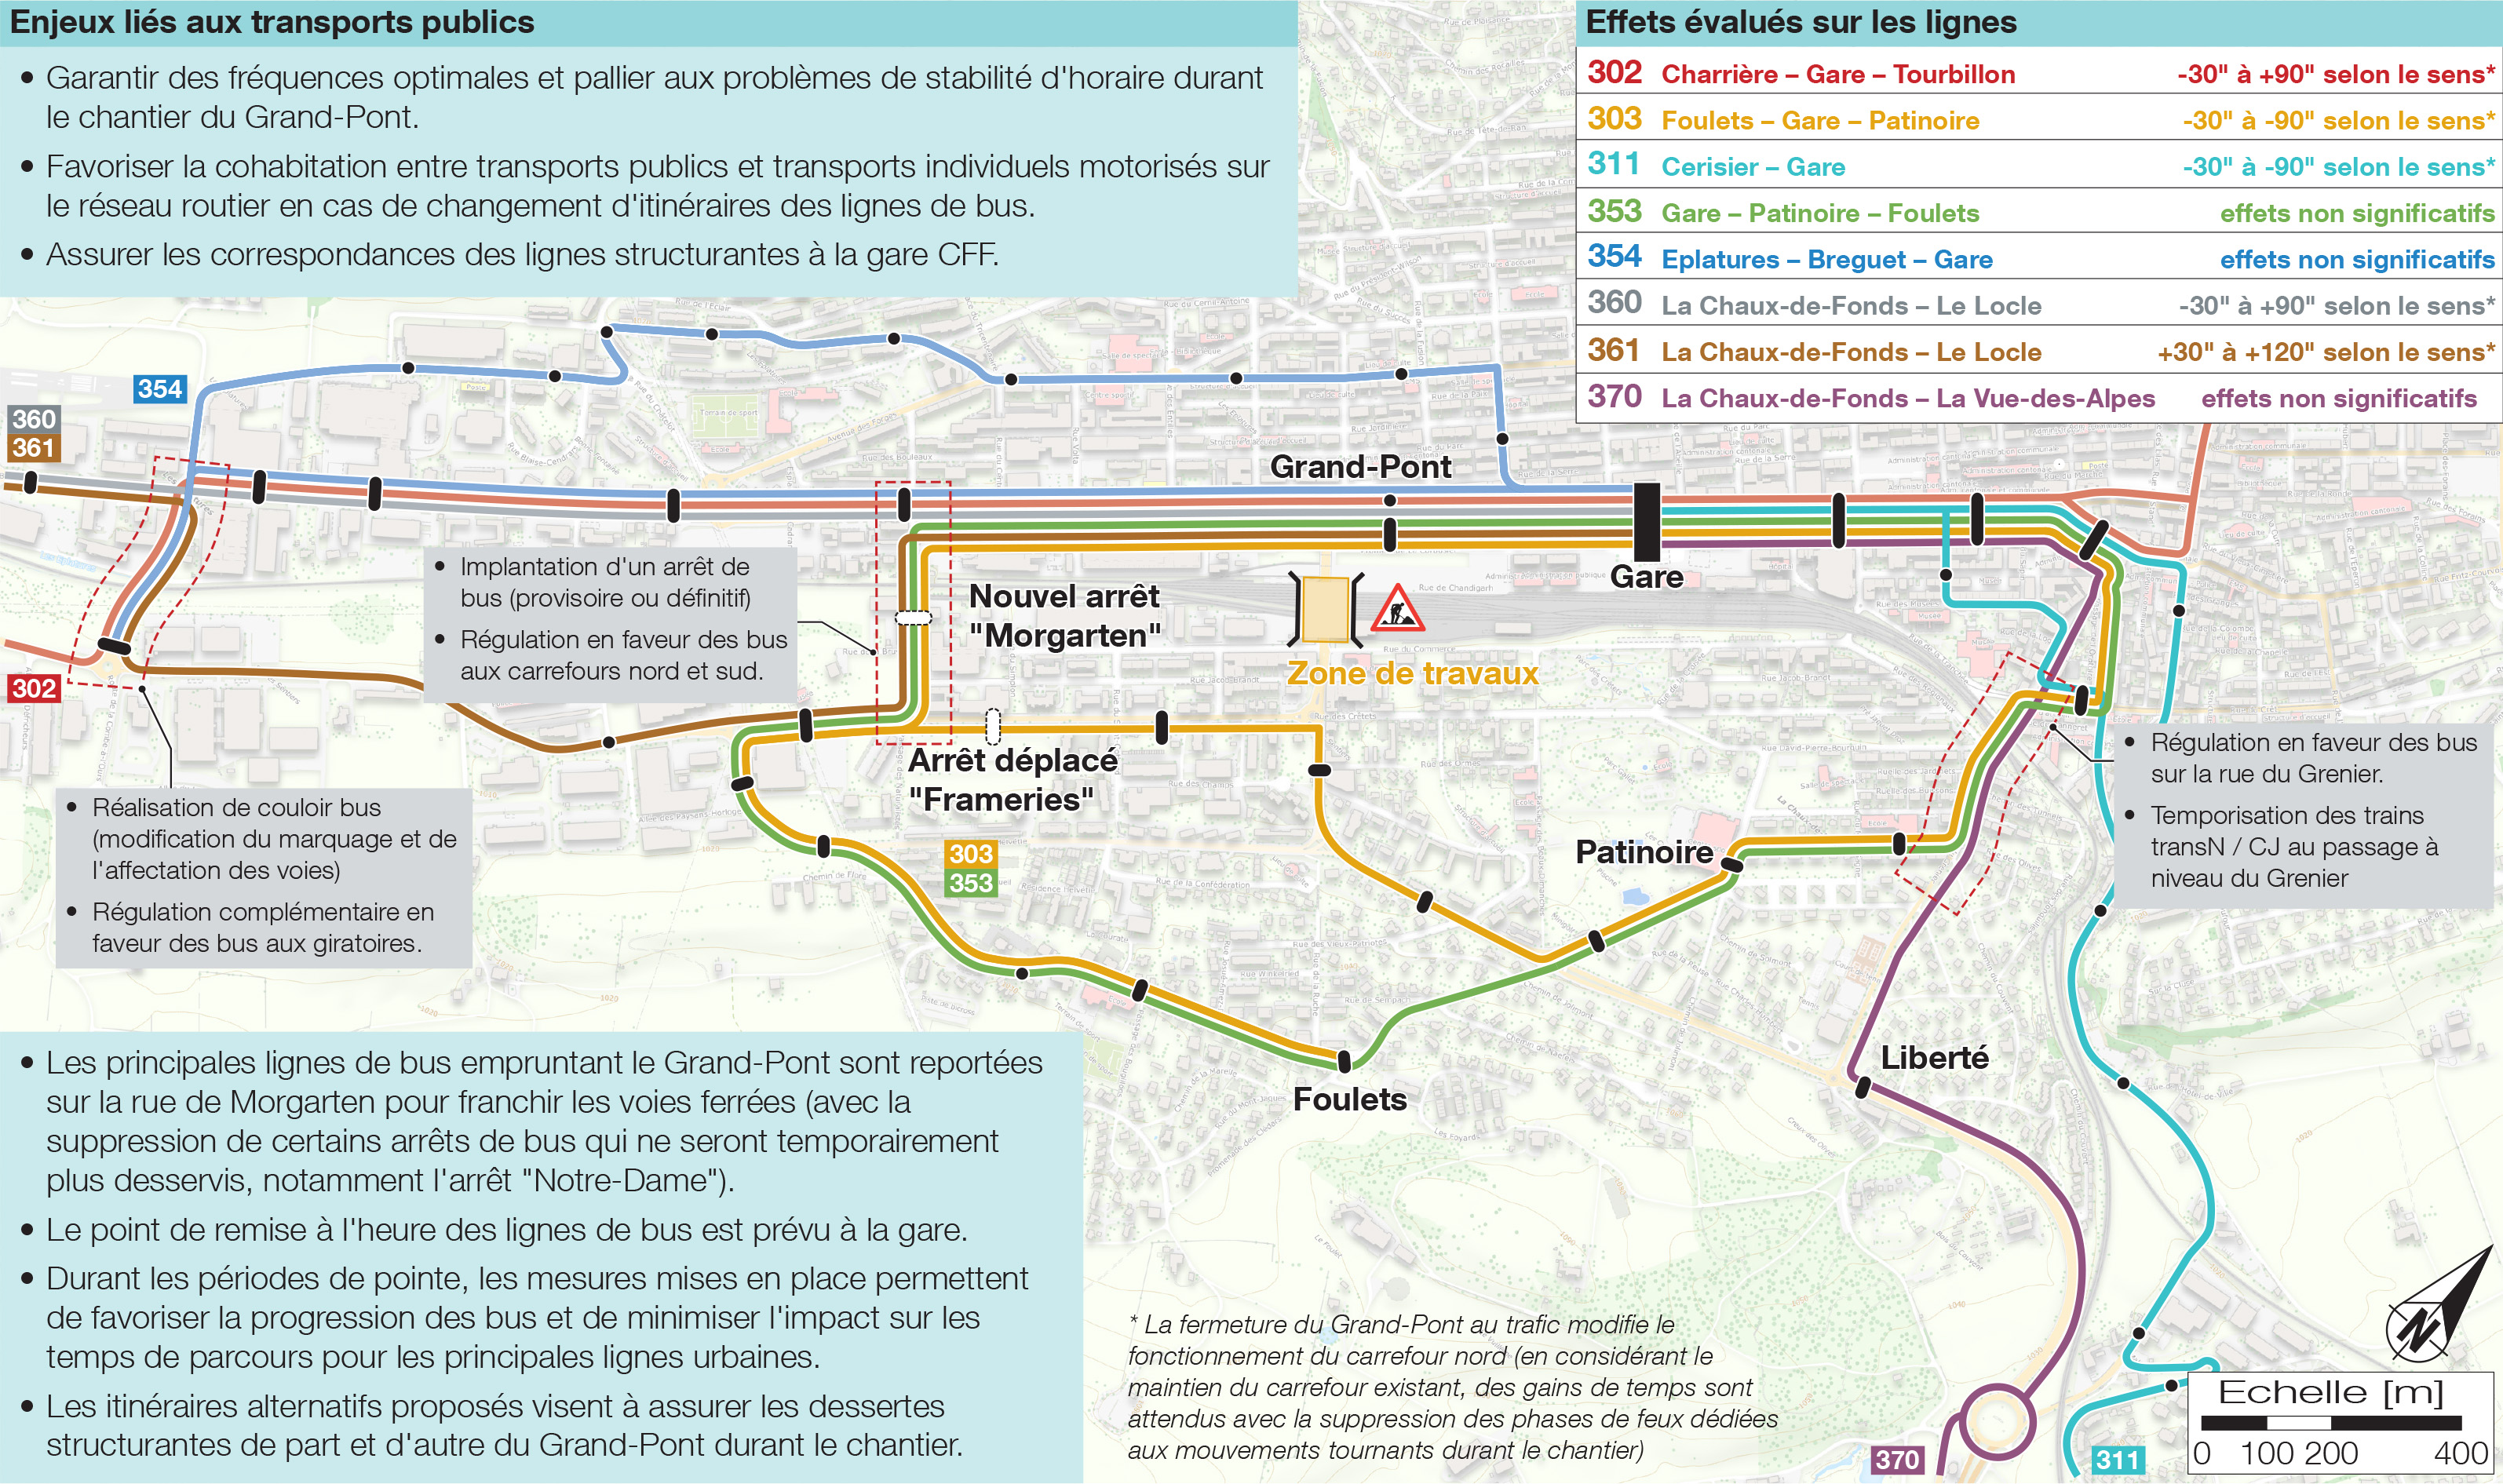 Réorganisation proposée du réseau des lignes de bus durant le chantier